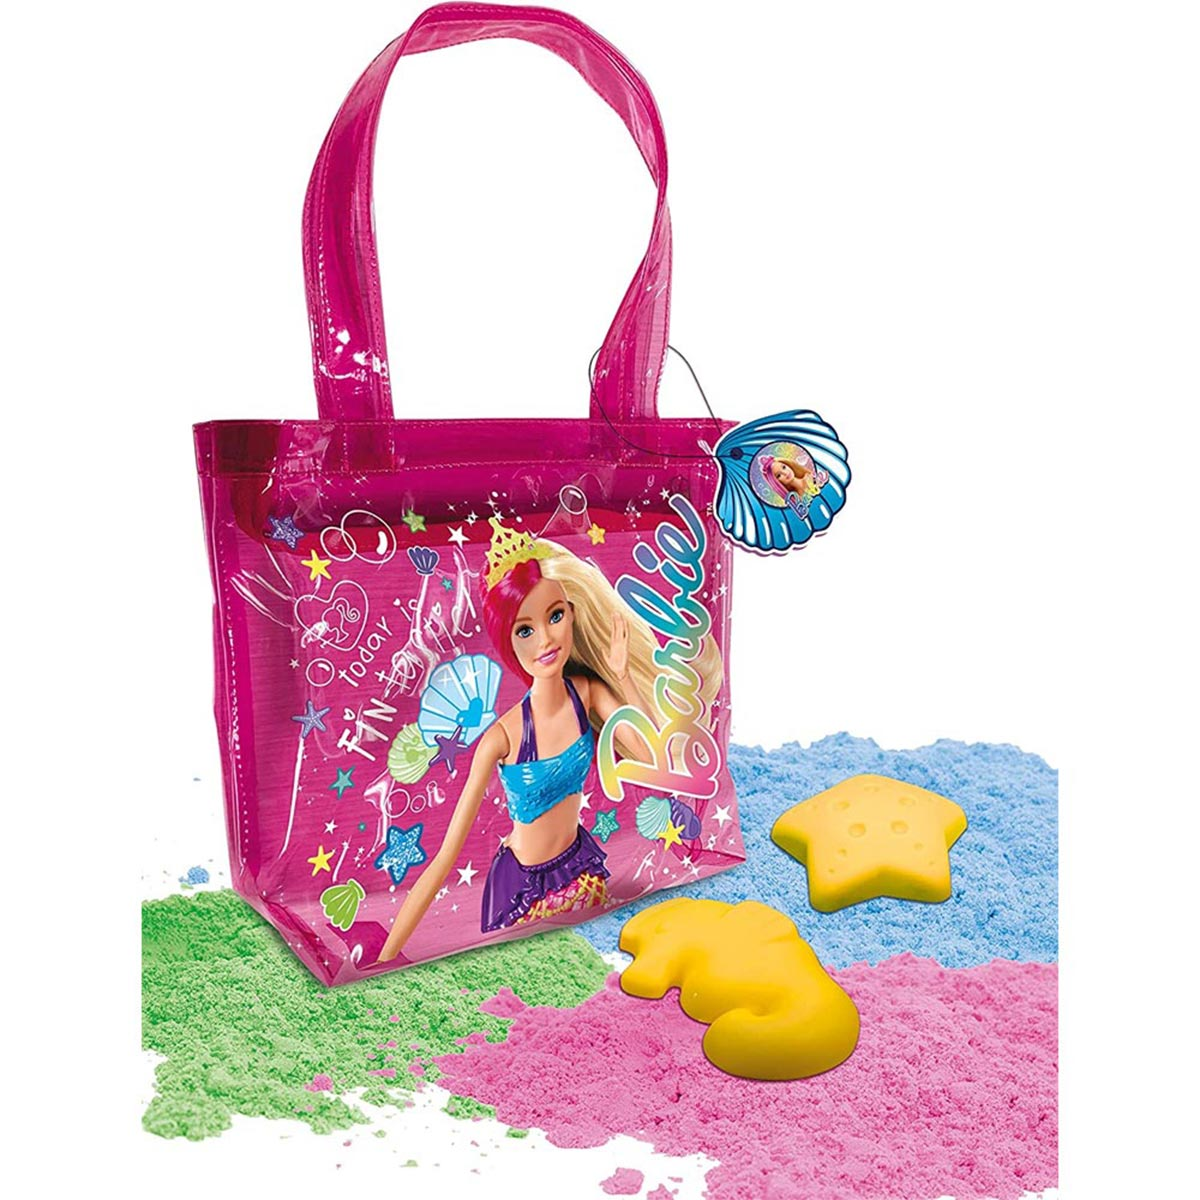 Lisciani Lernspiele, Barbie mehrfarbig BARBIE Strandtasche mit Sand,